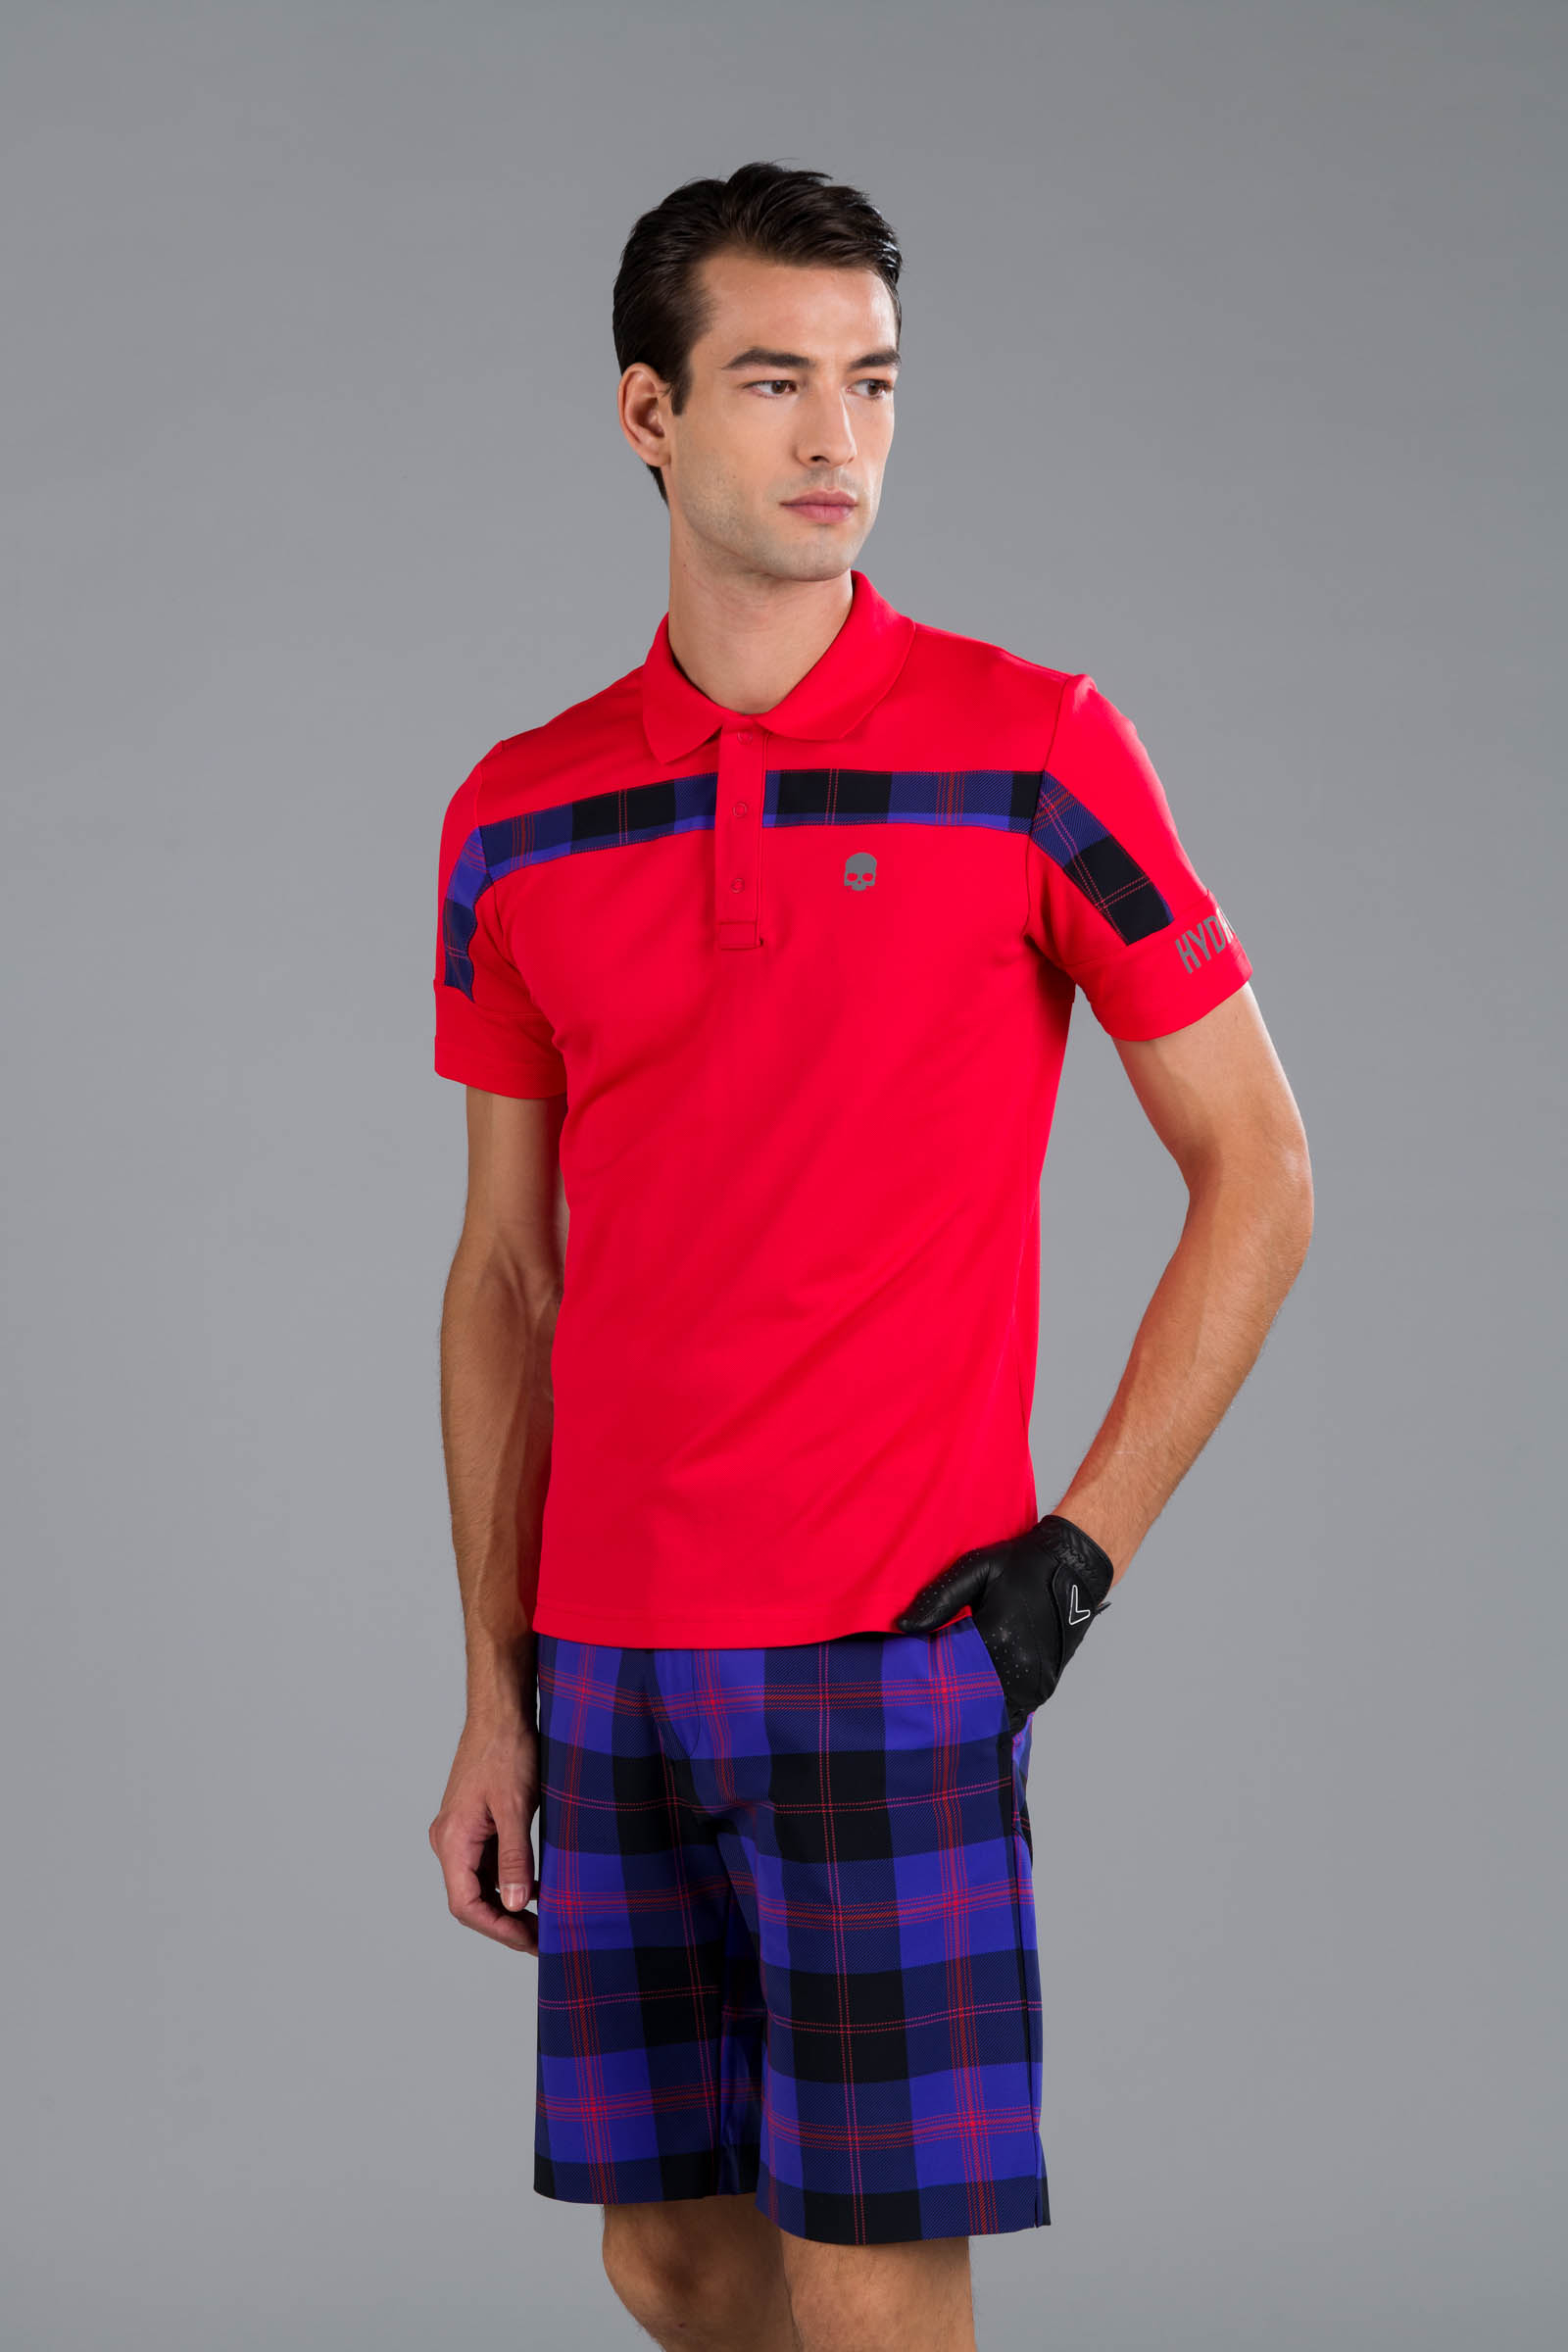 TECH POLO - RED - Hydrogen - Luxury Sportwear